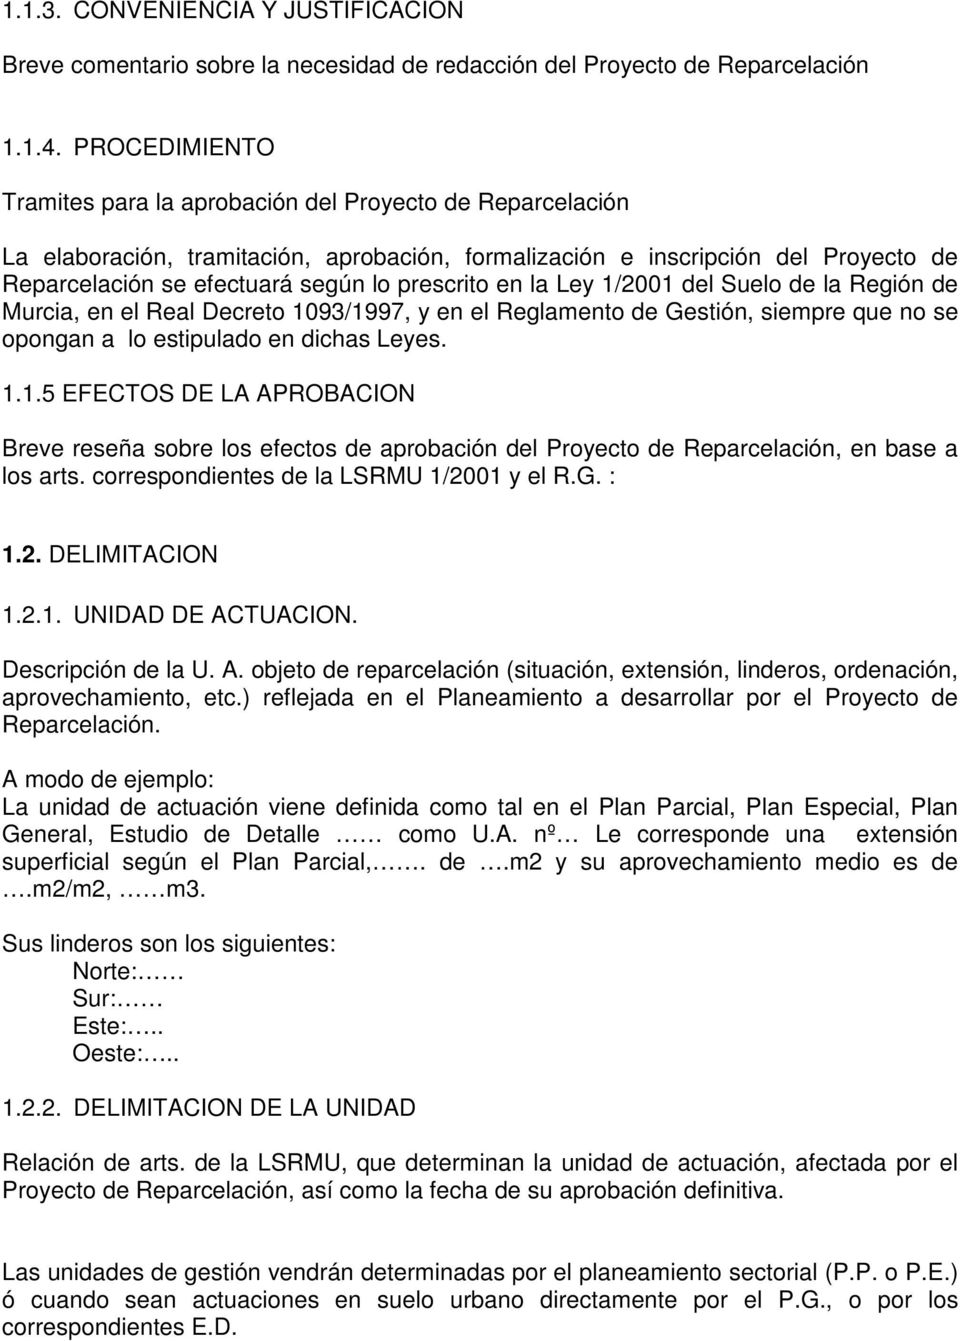 prescrito en la Ley 1/2001 del Suelo de la Región de Murcia, en el Real Decreto 1093/1997, y en el Reglamento de Gestión, siempre que no se opongan a lo estipulado en dichas Leyes. 1.1.5 EFECTOS DE LA APROBACION Breve reseña sobre los efectos de aprobación del Proyecto de Reparcelación, en base a los arts.